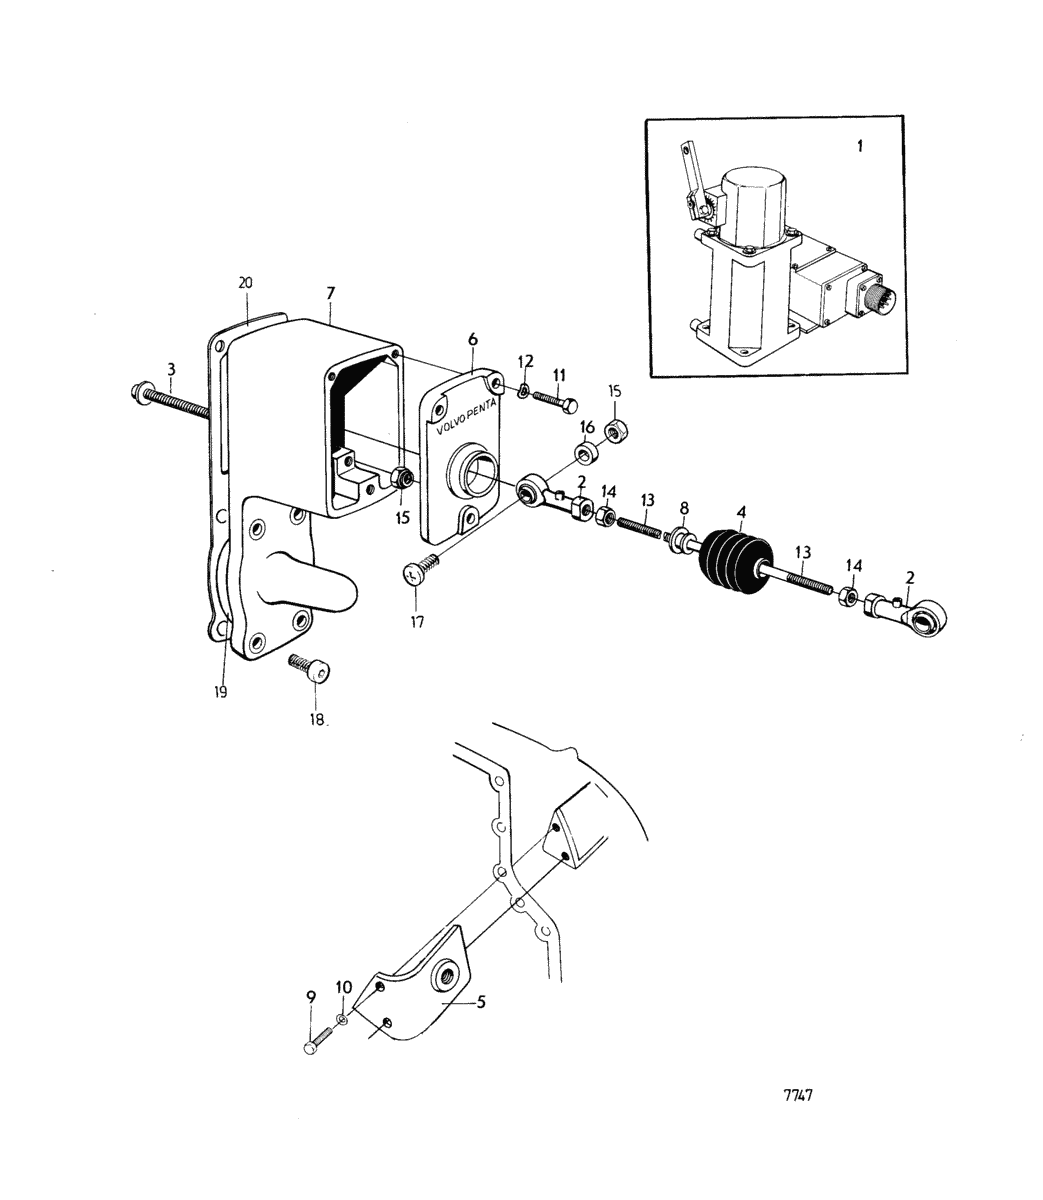 Kit de montage pour regulateur hydraulique: B